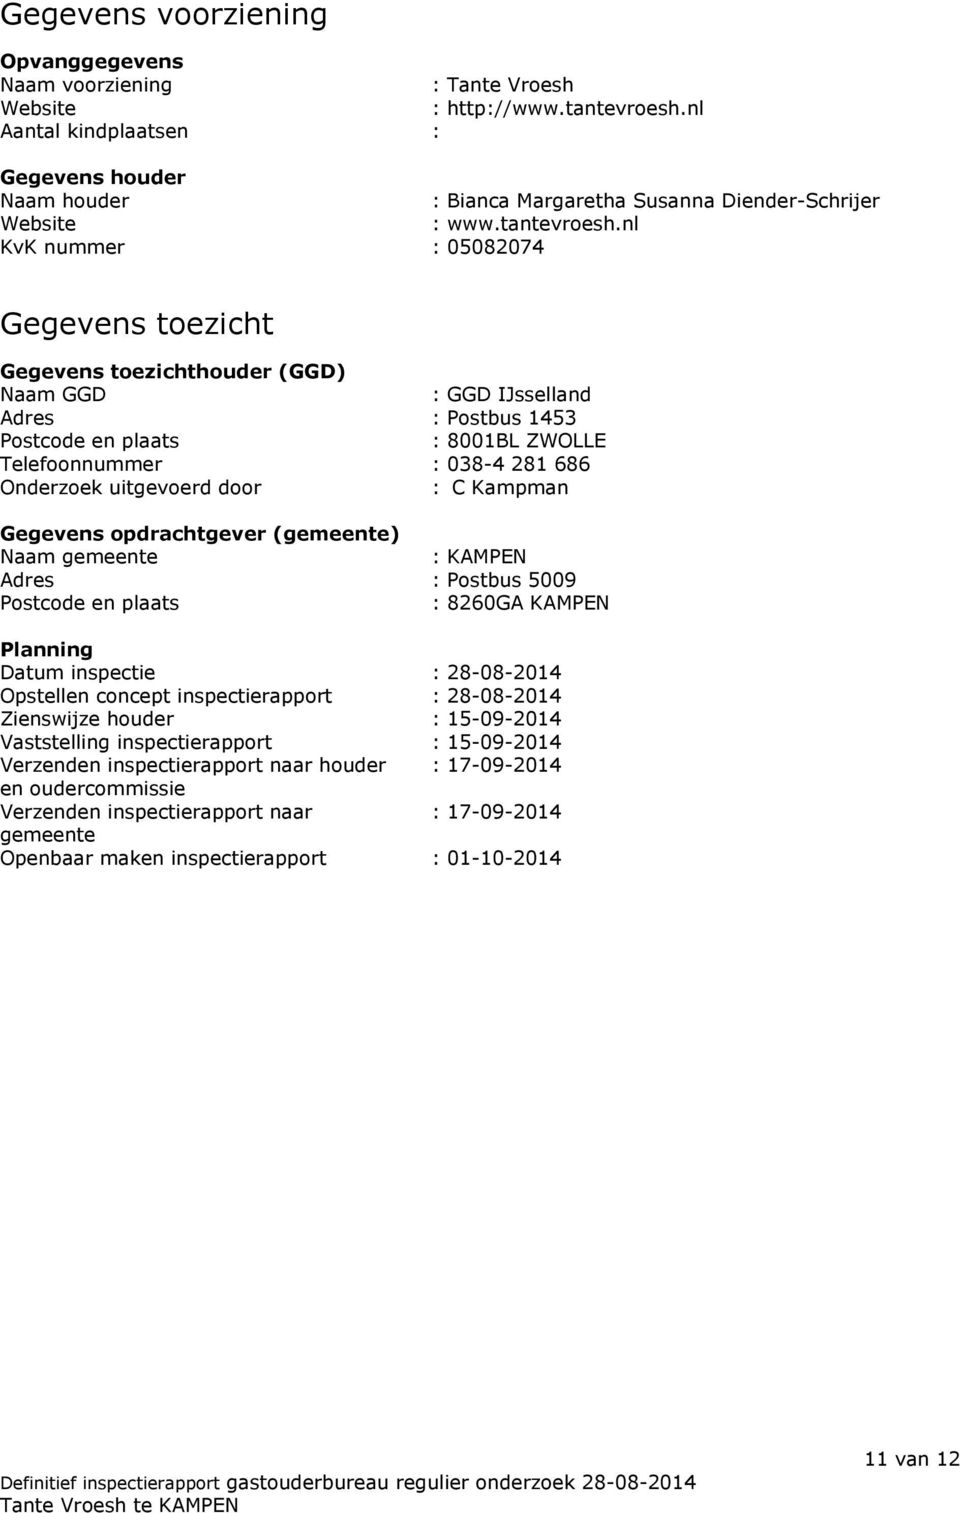 nl KvK nummer : 05082074 Gegevens toezicht Gegevens toezichthouder (GGD) Naam GGD : GGD IJsselland Adres : Postbus 1453 Postcode en plaats : 8001BL ZWOLLE Telefoonnummer : 038-4 281 686 Onderzoek